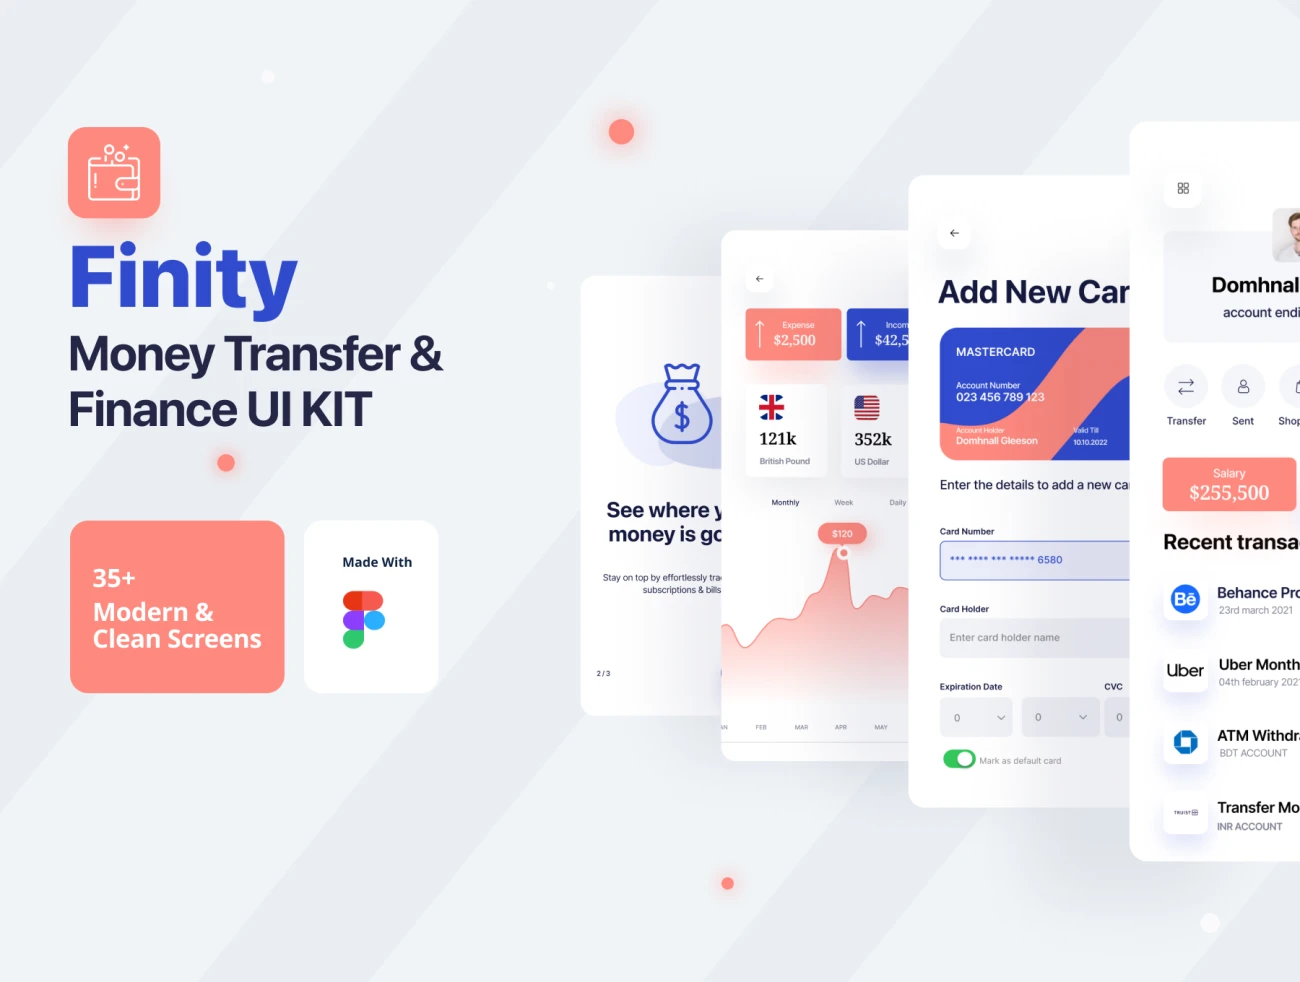 35屏银行理财金融汇款应用UI设计工具包 Finity App UI Kit For Banking, Finance and Money Transfer Kit插图1